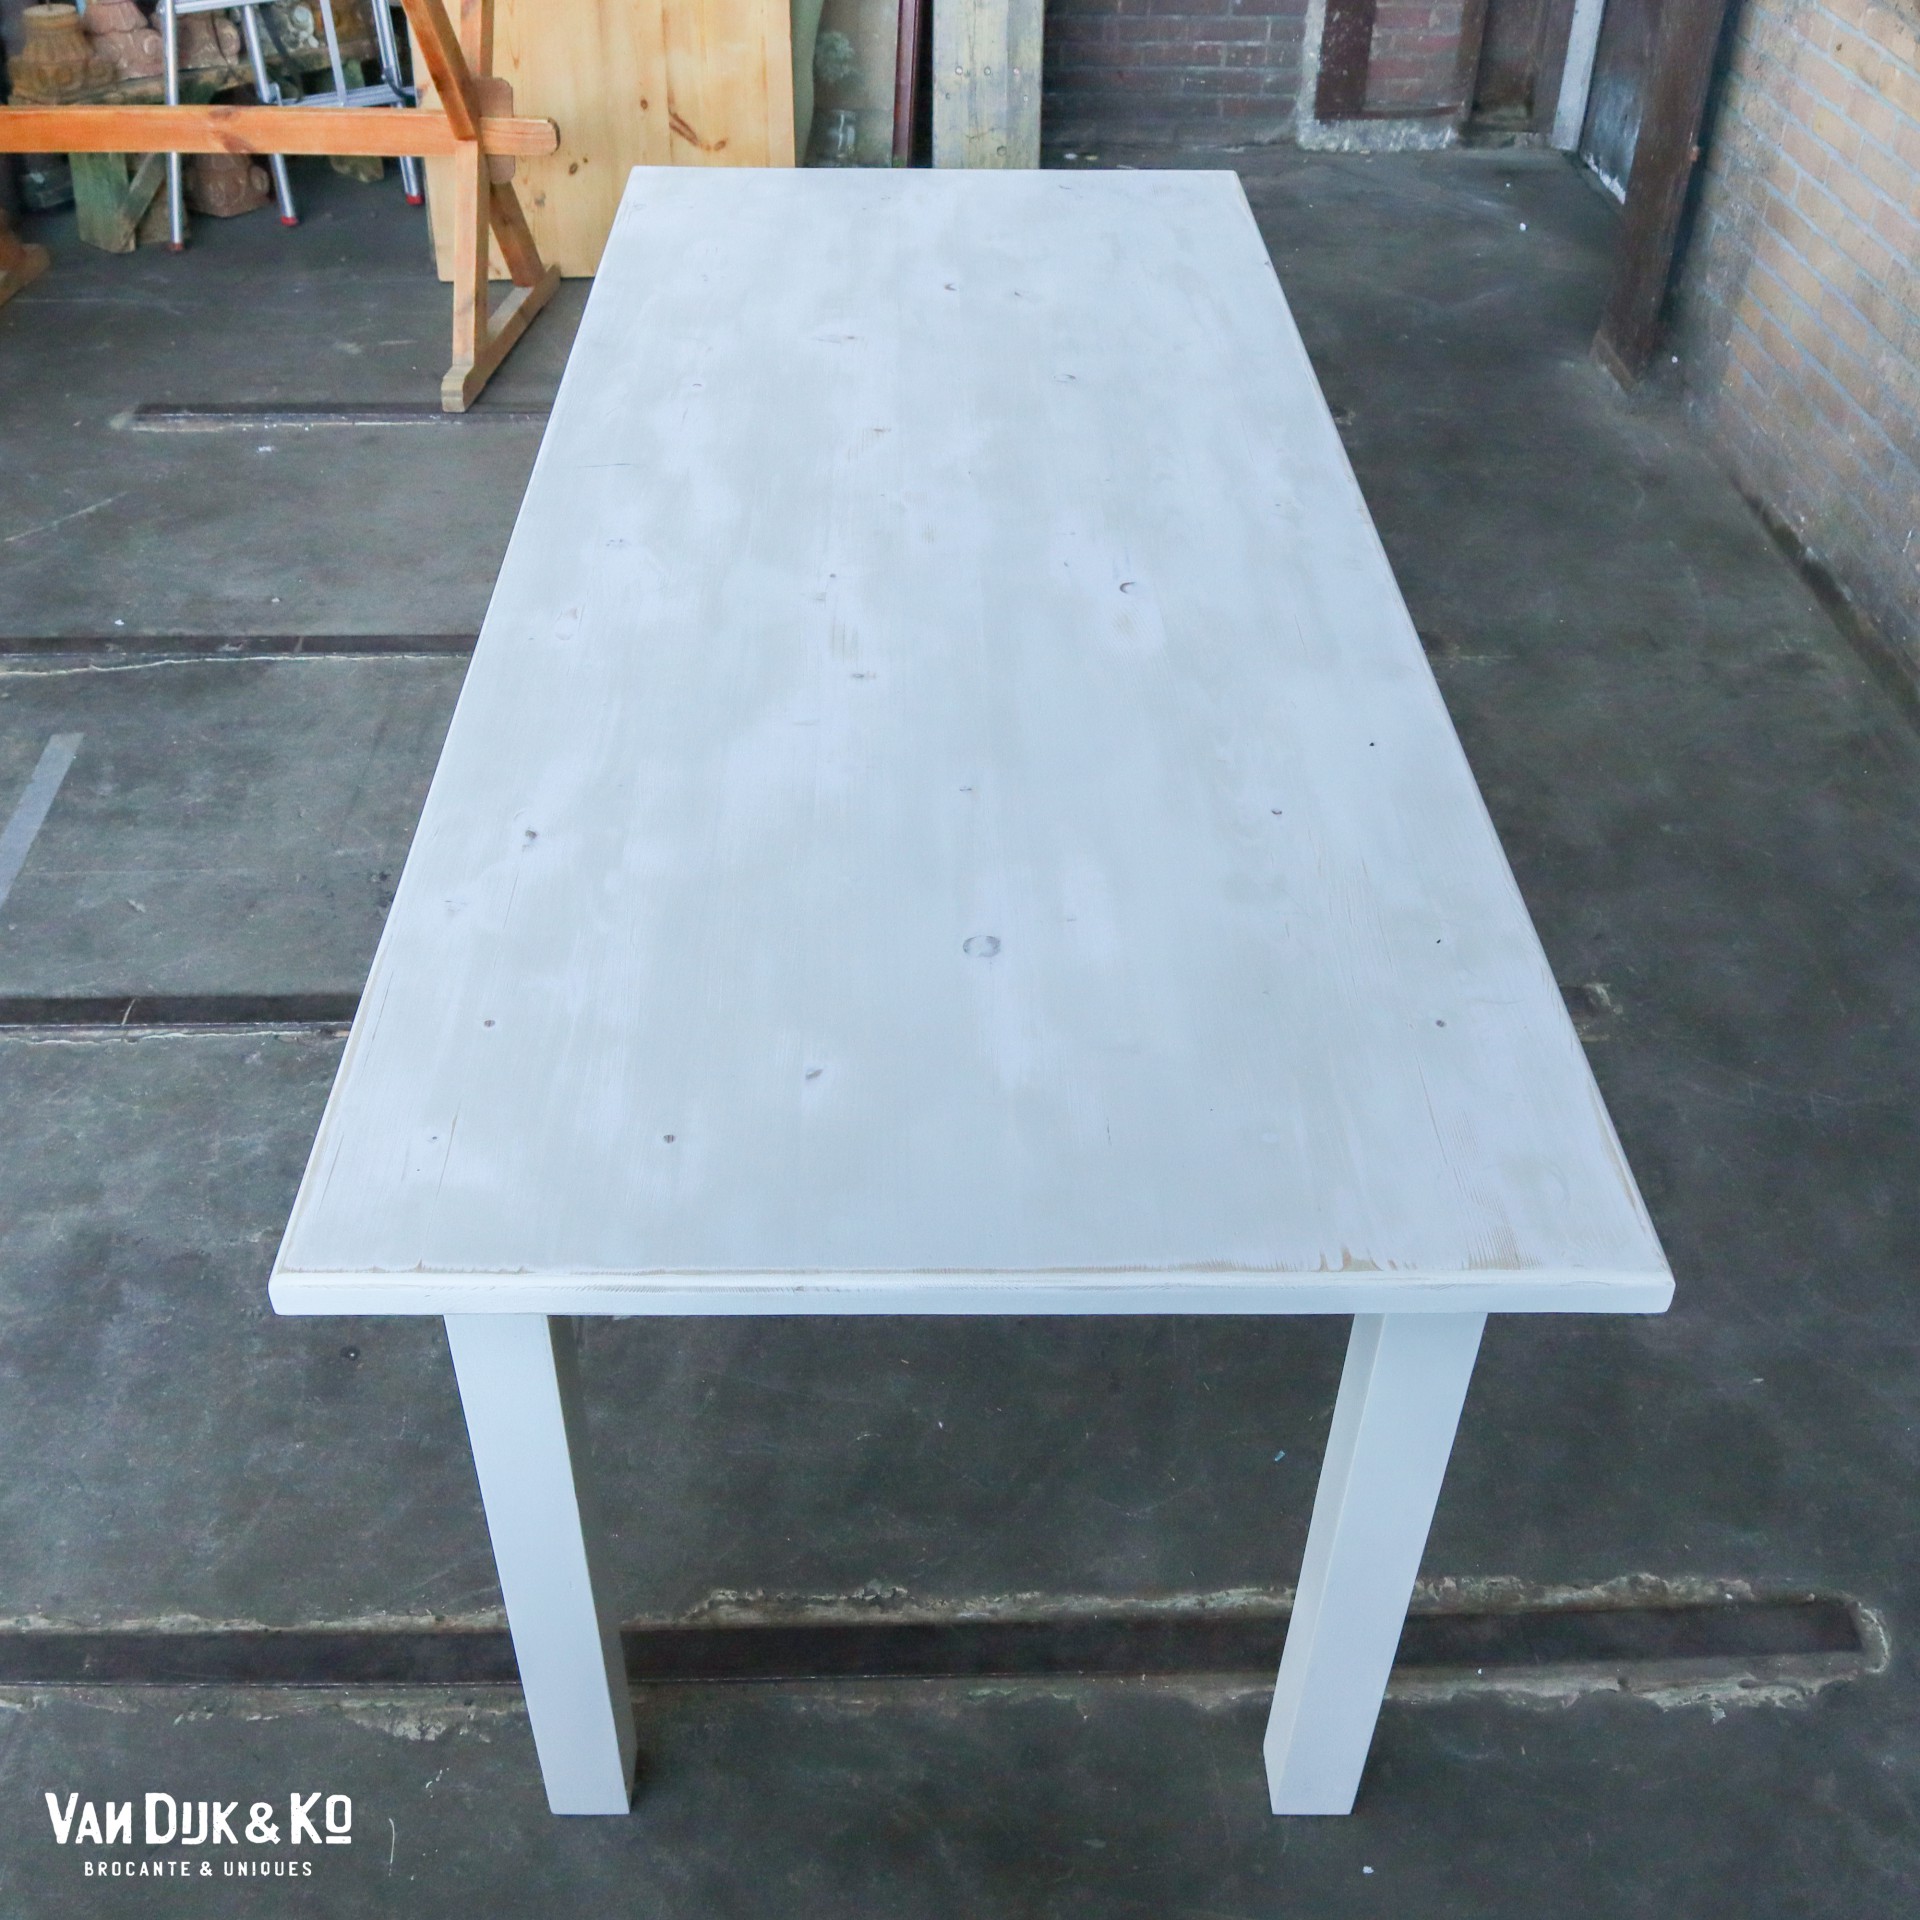 Parel Hiel platform Witte houten tafel » Van Dijk & Ko